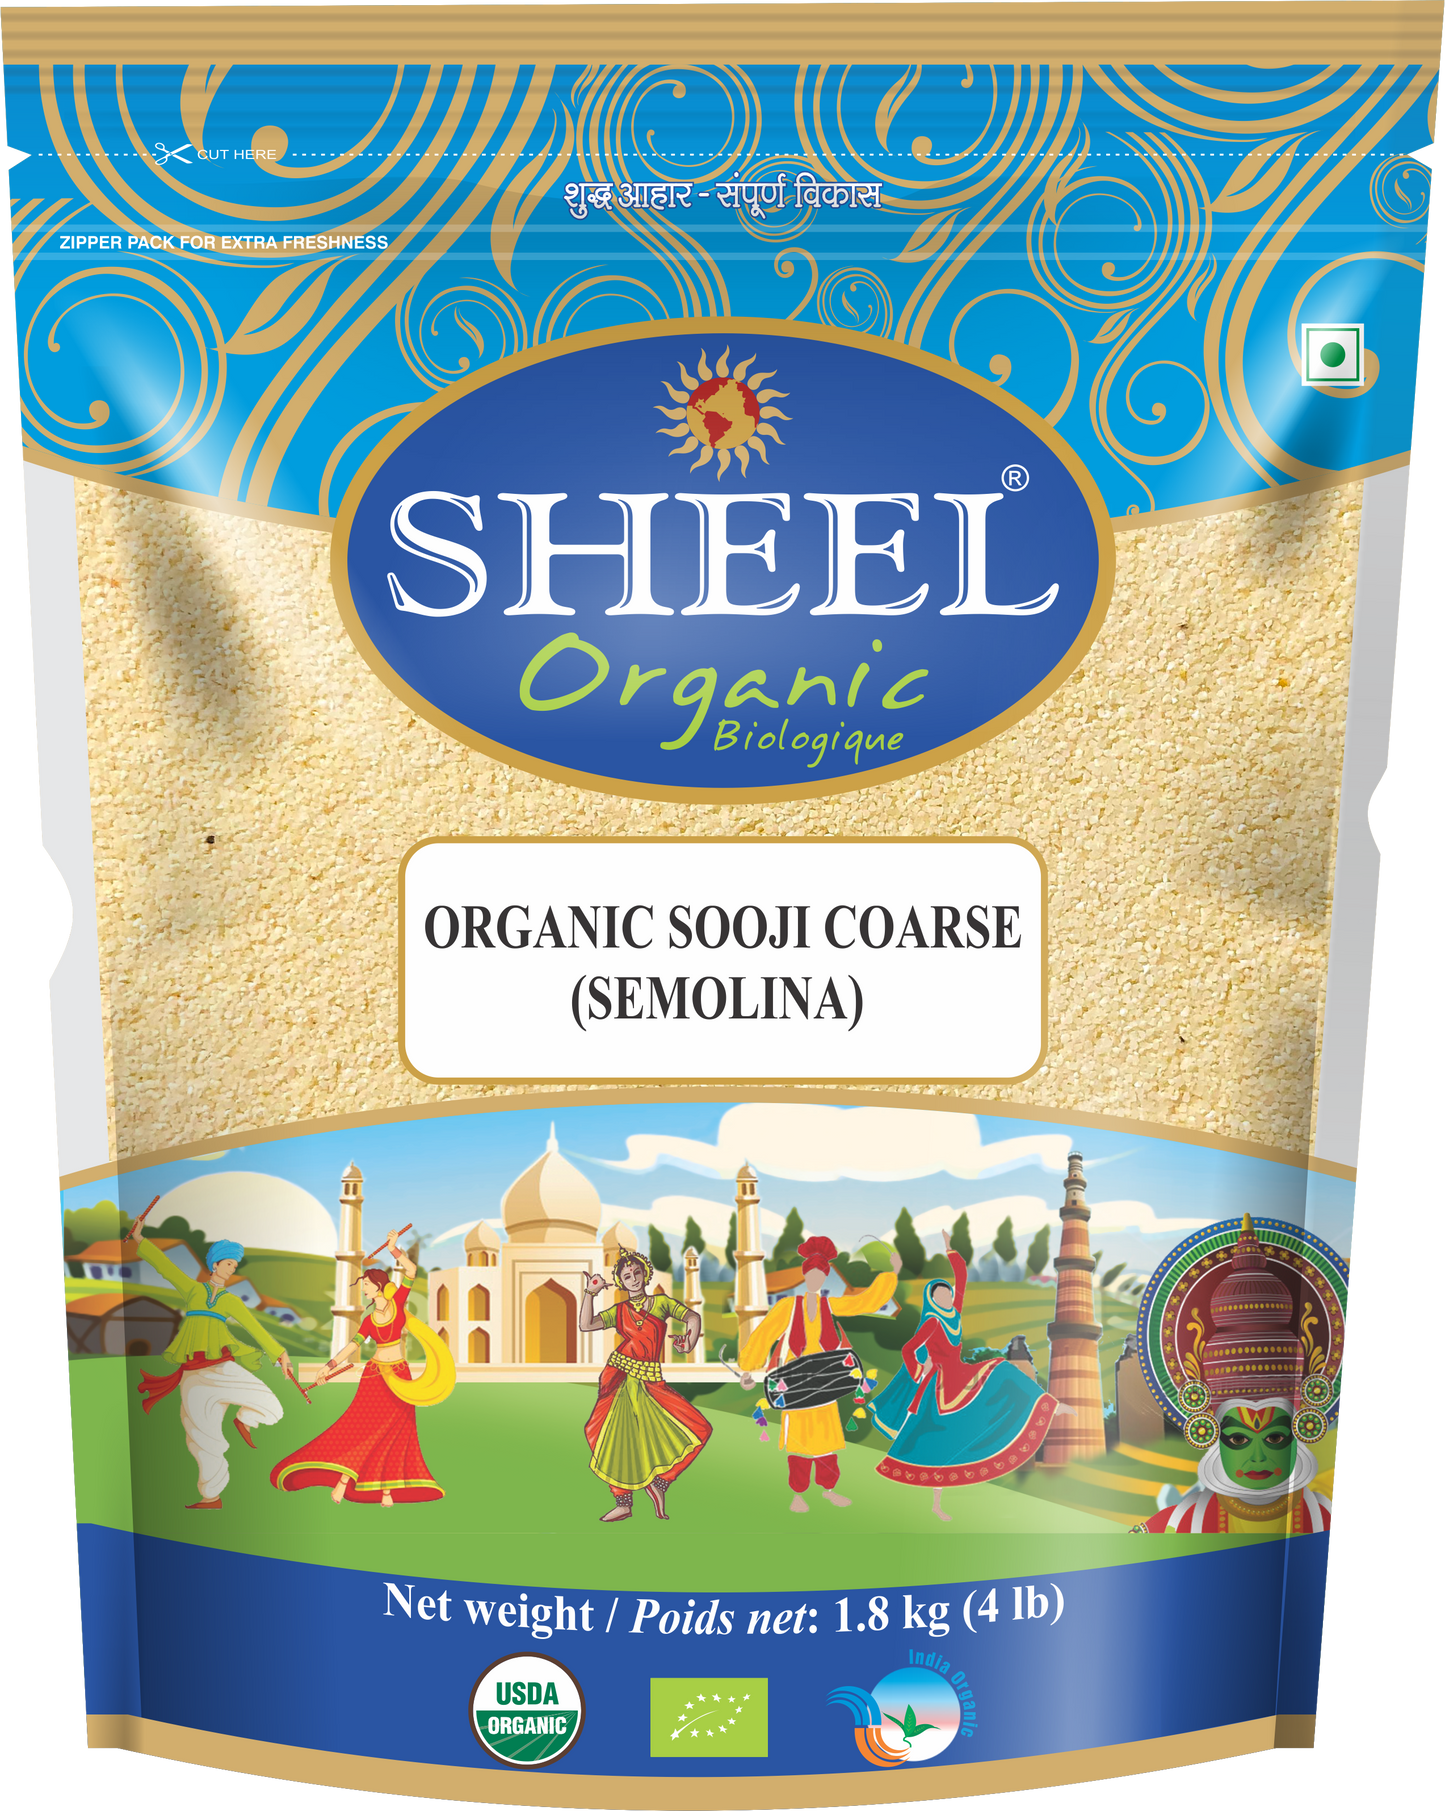 Sheel Organic Sooji Coarse - Sémola (4 libras)